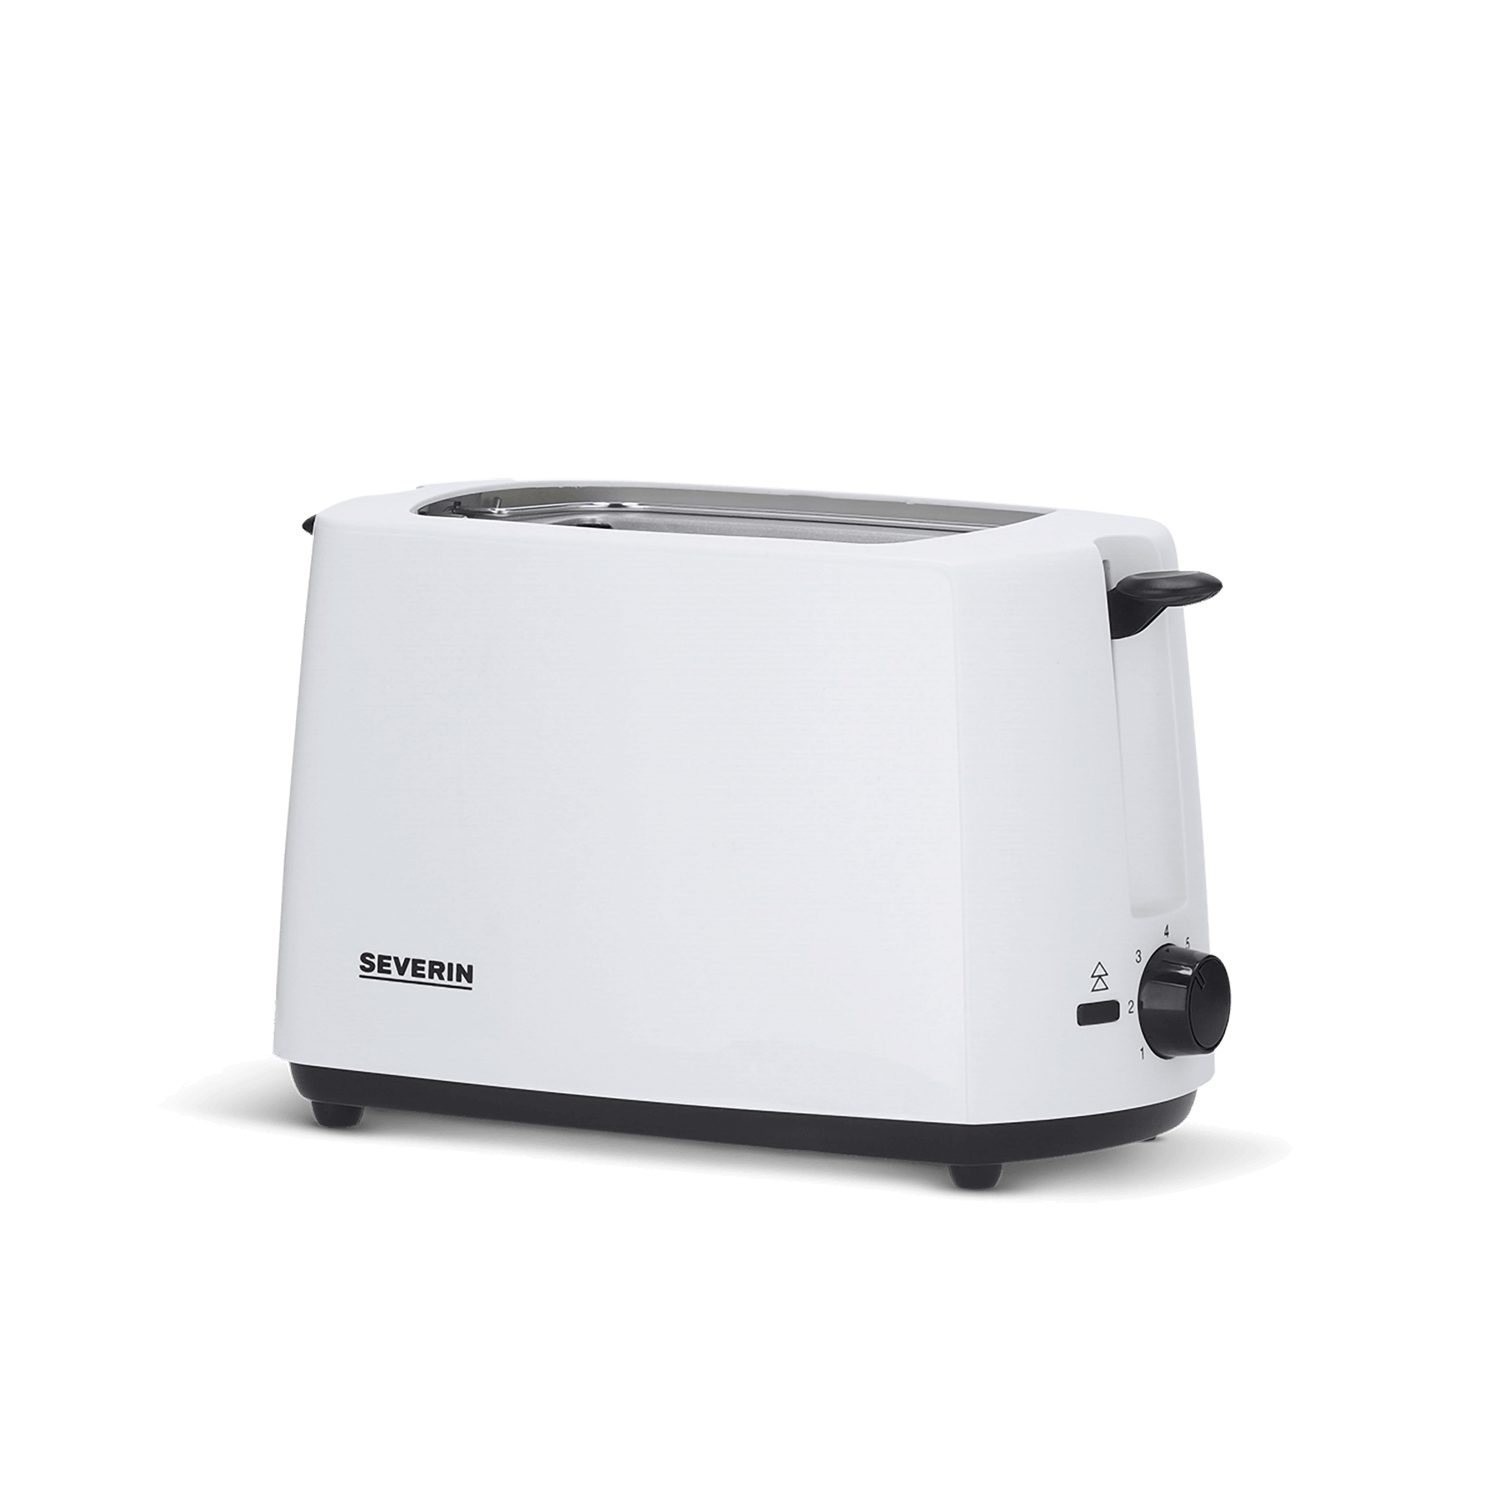 Weiße Toaster online kaufen | OTTO